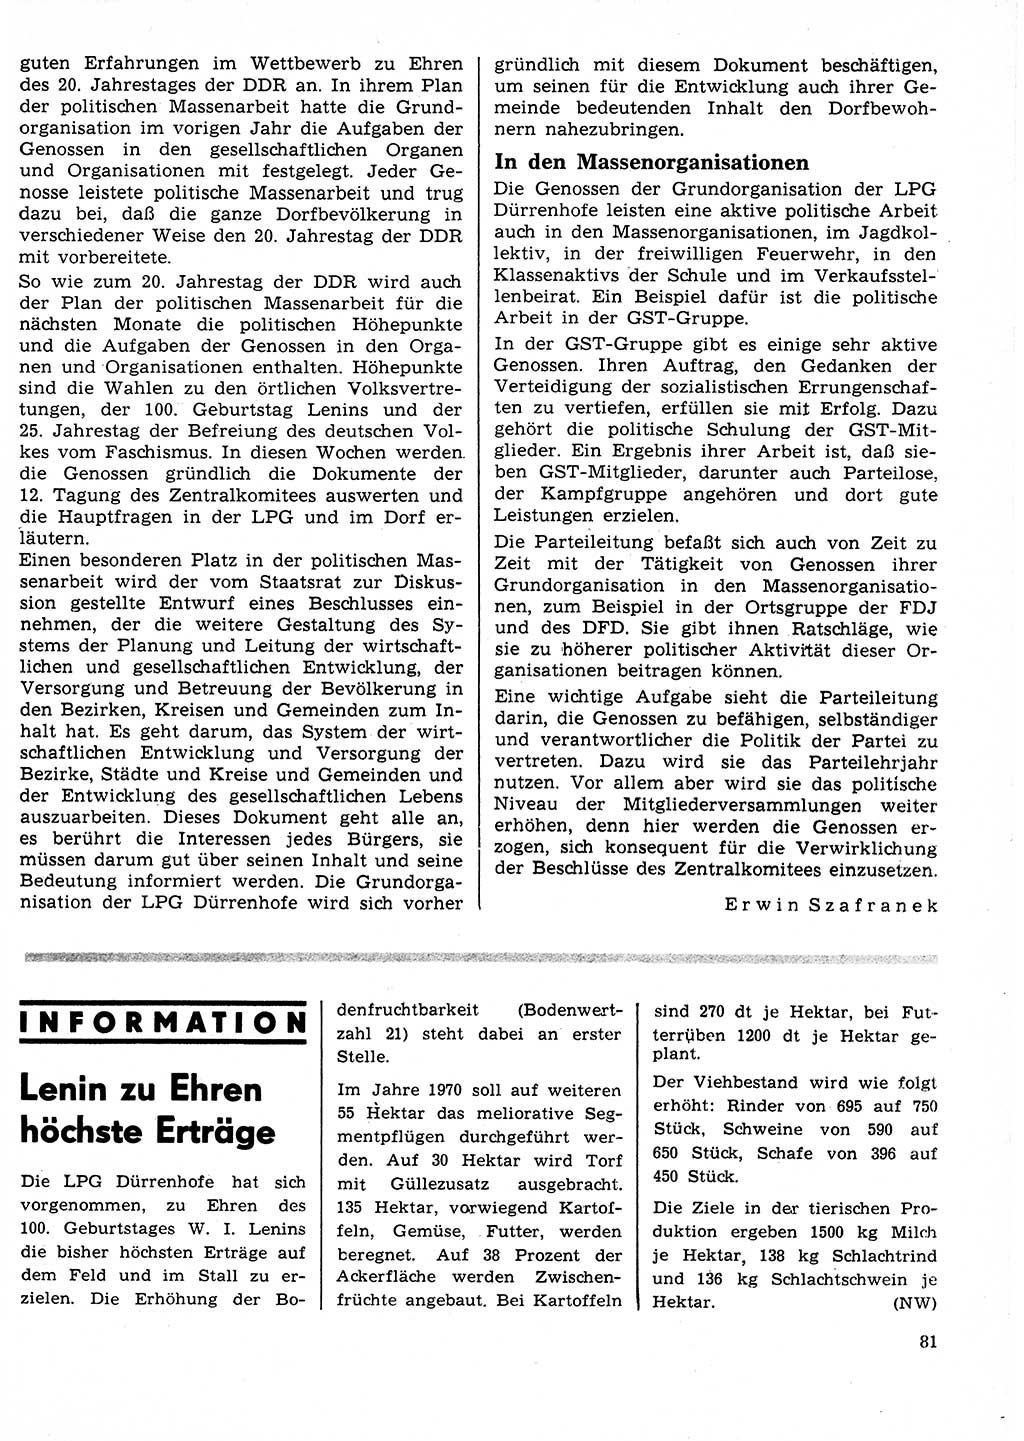 Neuer Weg (NW), Organ des Zentralkomitees (ZK) der SED (Sozialistische Einheitspartei Deutschlands) für Fragen des Parteilebens, 25. Jahrgang [Deutsche Demokratische Republik (DDR)] 1970, Seite 81 (NW ZK SED DDR 1970, S. 81)